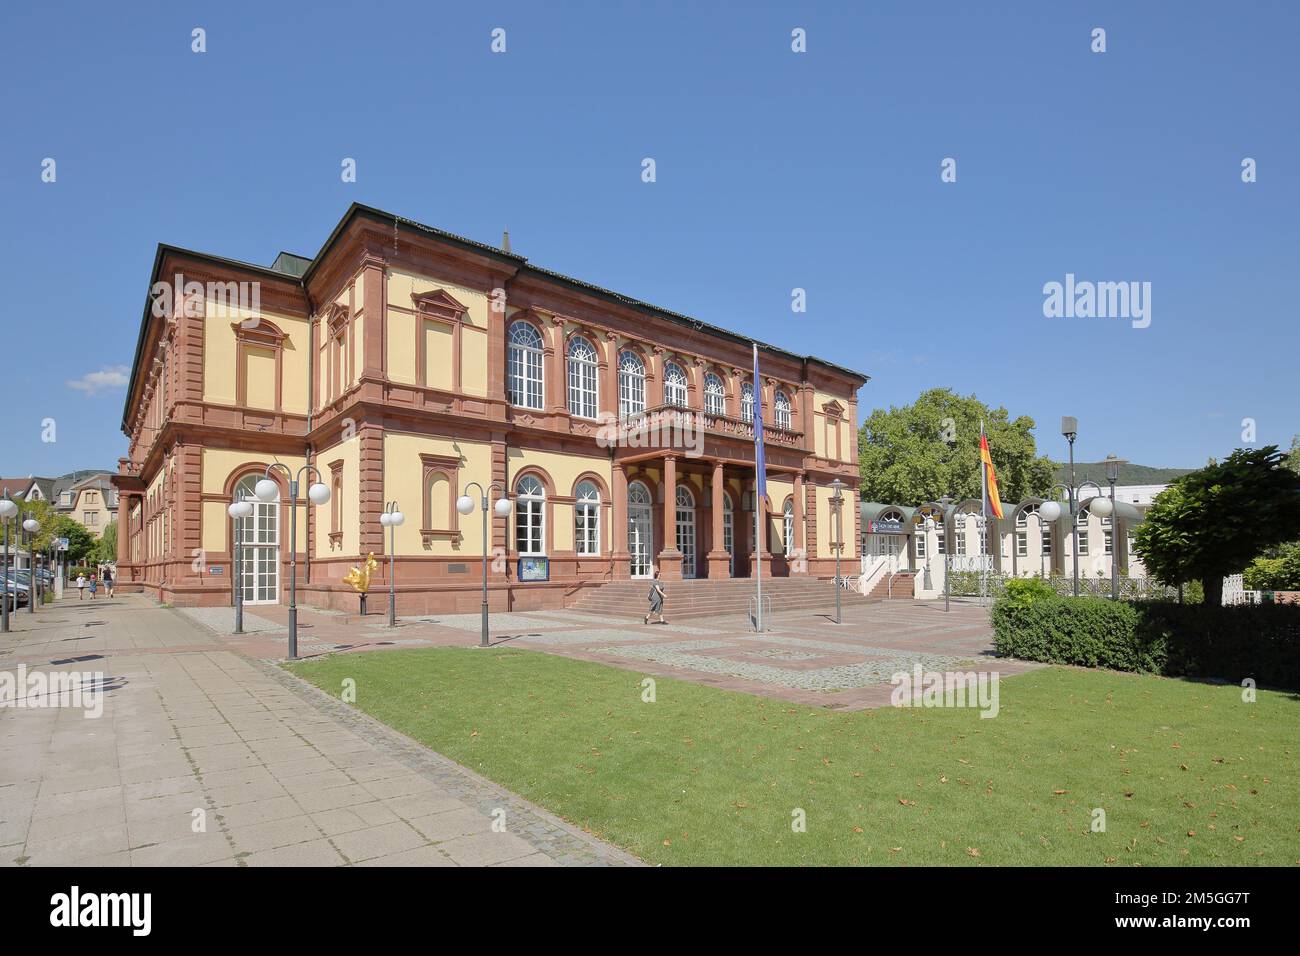 Saalbau built in 1872 in Neustadt an der Weinstrasse, Rhineland-Palatinate, Germany Stock Photo